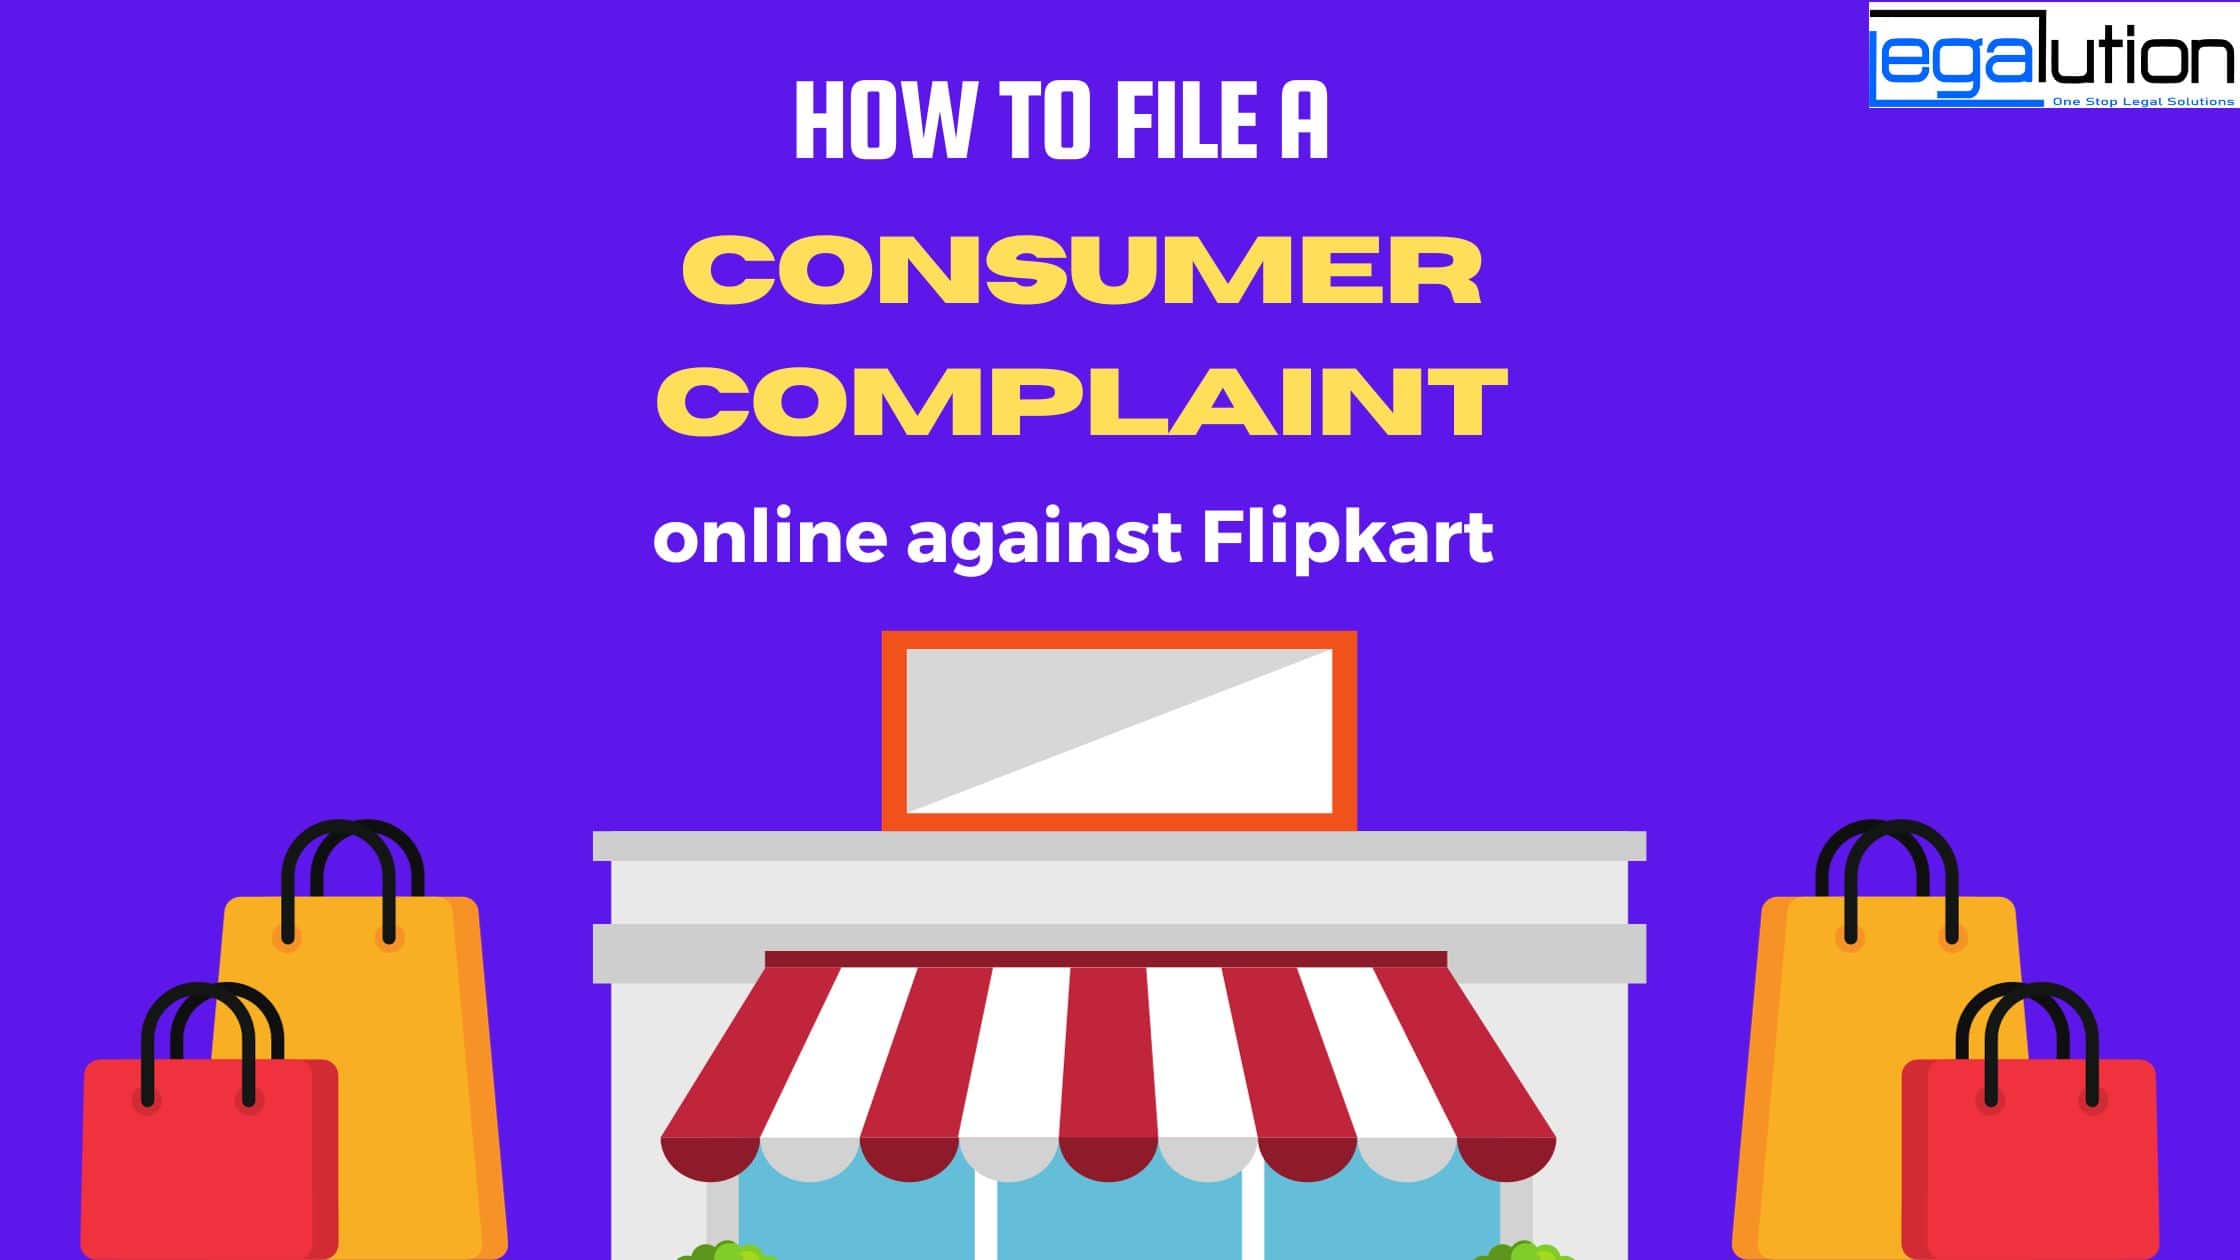 How to File Consumer Complaint Online Against Flipkart